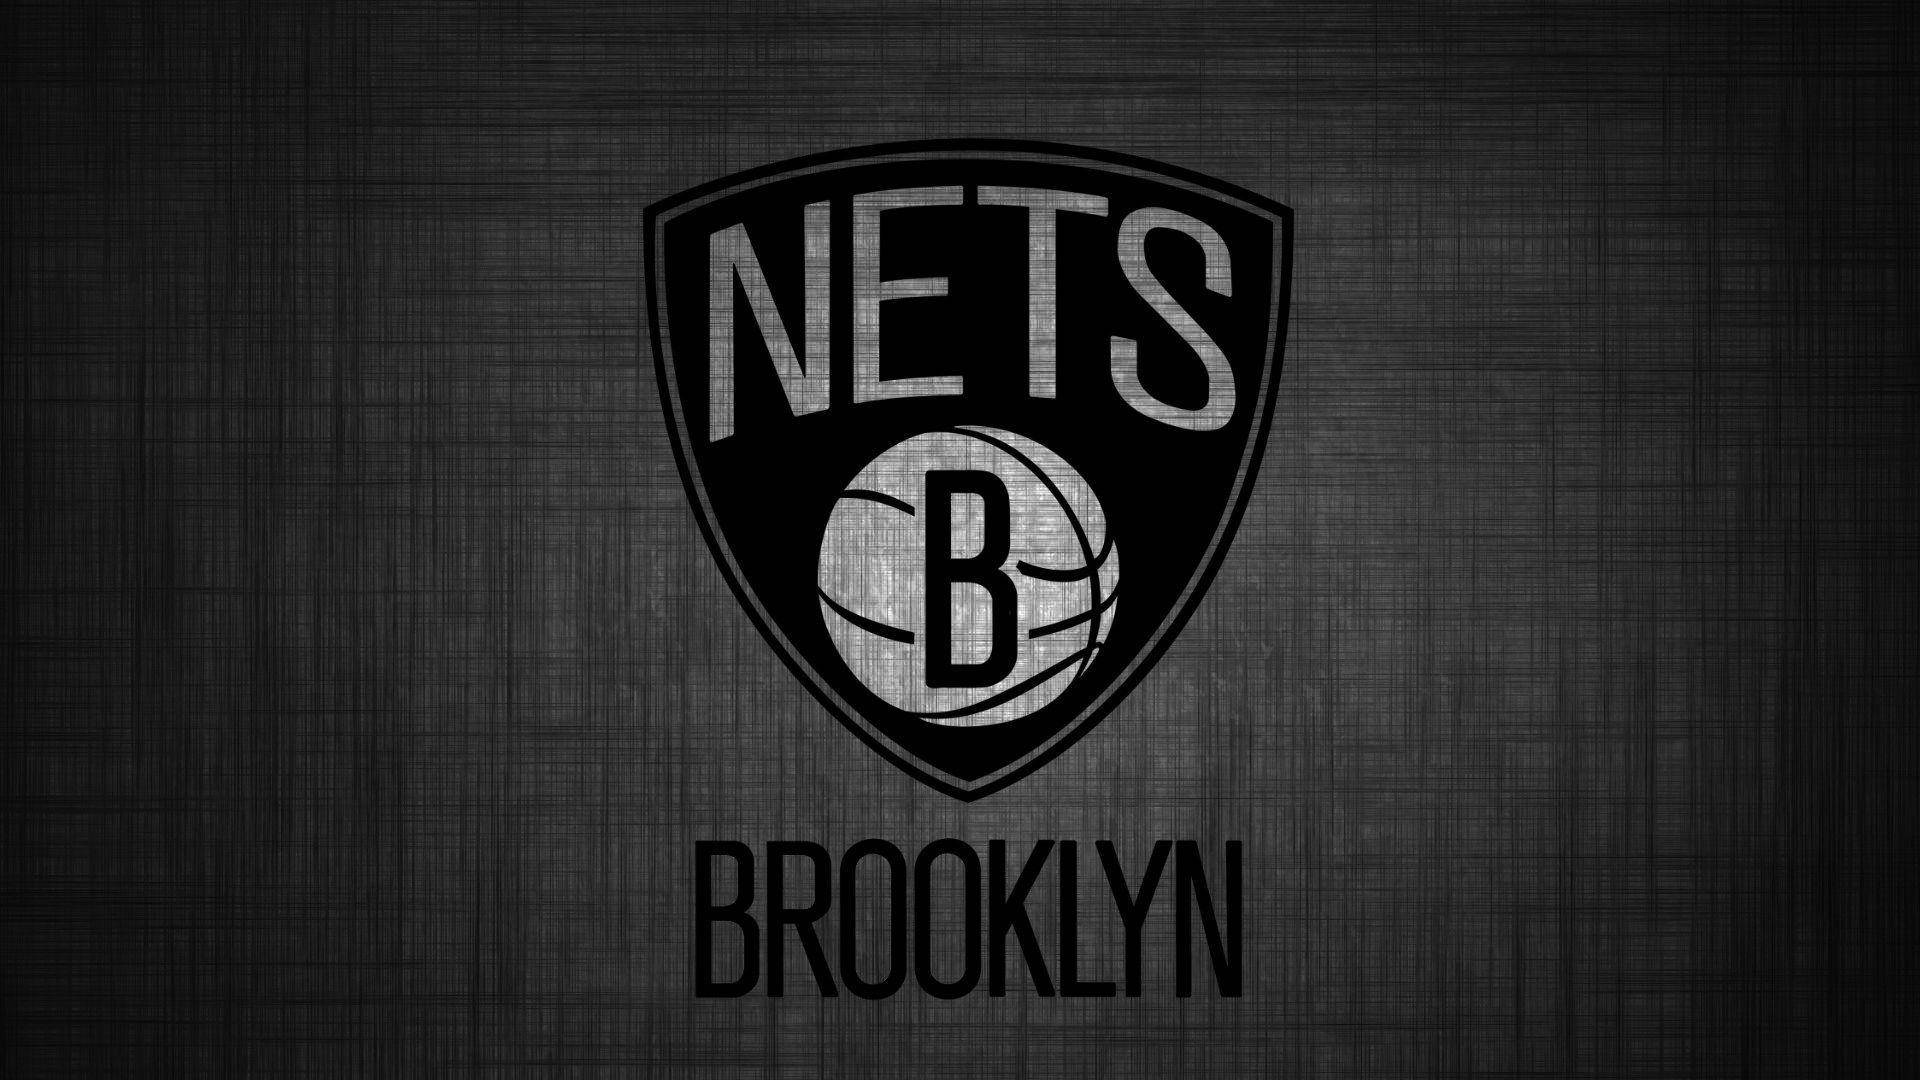 Enkelbrooklyn Nets-logotyp Wallpaper